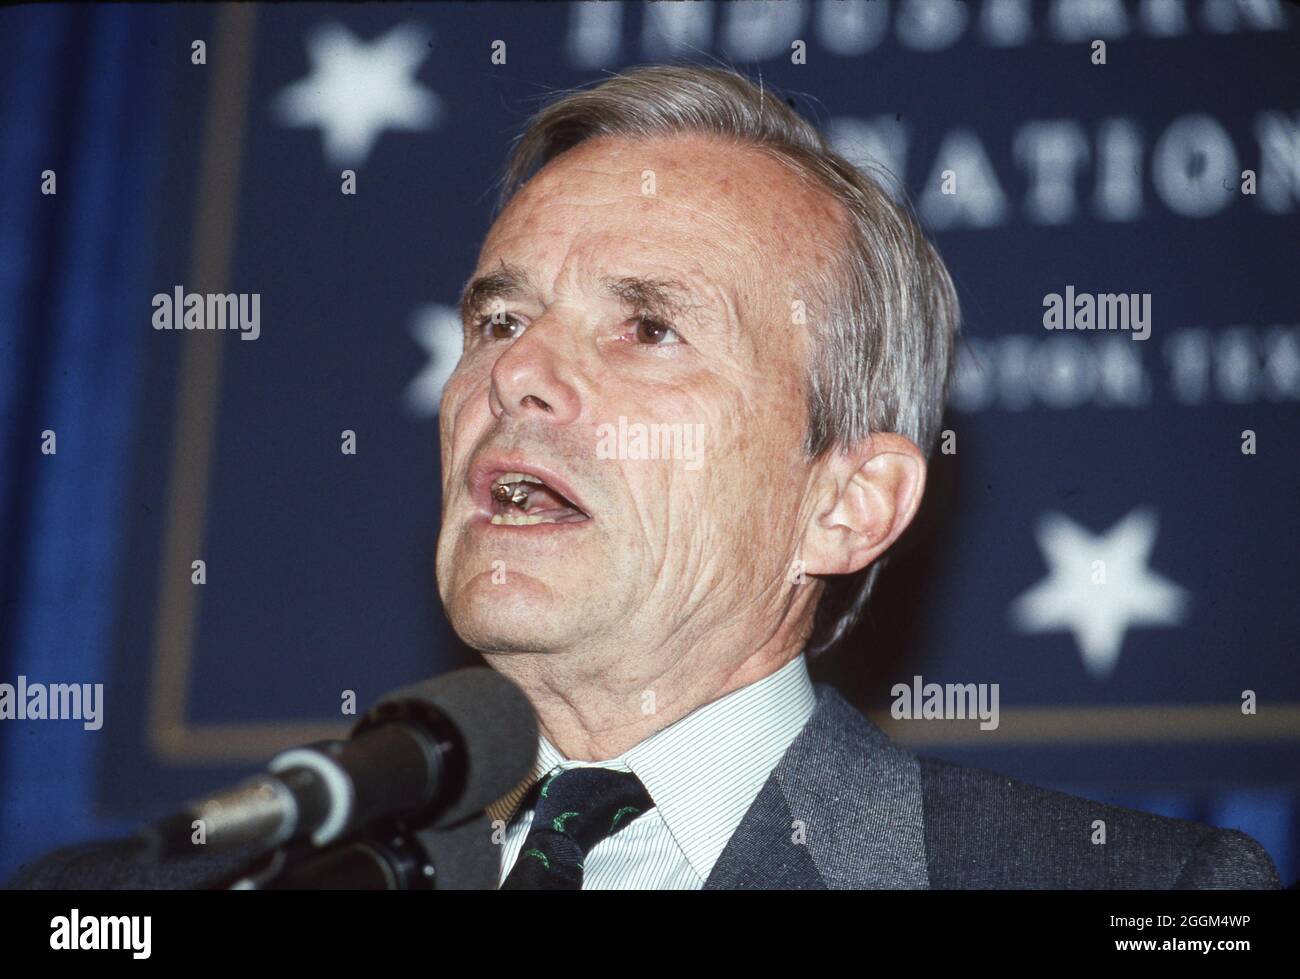 Houston Texas USA, Juli 1990: US-Finanzminister NicholBrady spricht beim Houston Economic Summit of Industrialized Nations vor führenden Politikern der Welt. Präsident George H. W. Bush moderierte die Veranstaltung, die auch als G7-Wirtschaftsgipfel bezeichnet wird. ©Bob Daemmrich Stockfoto